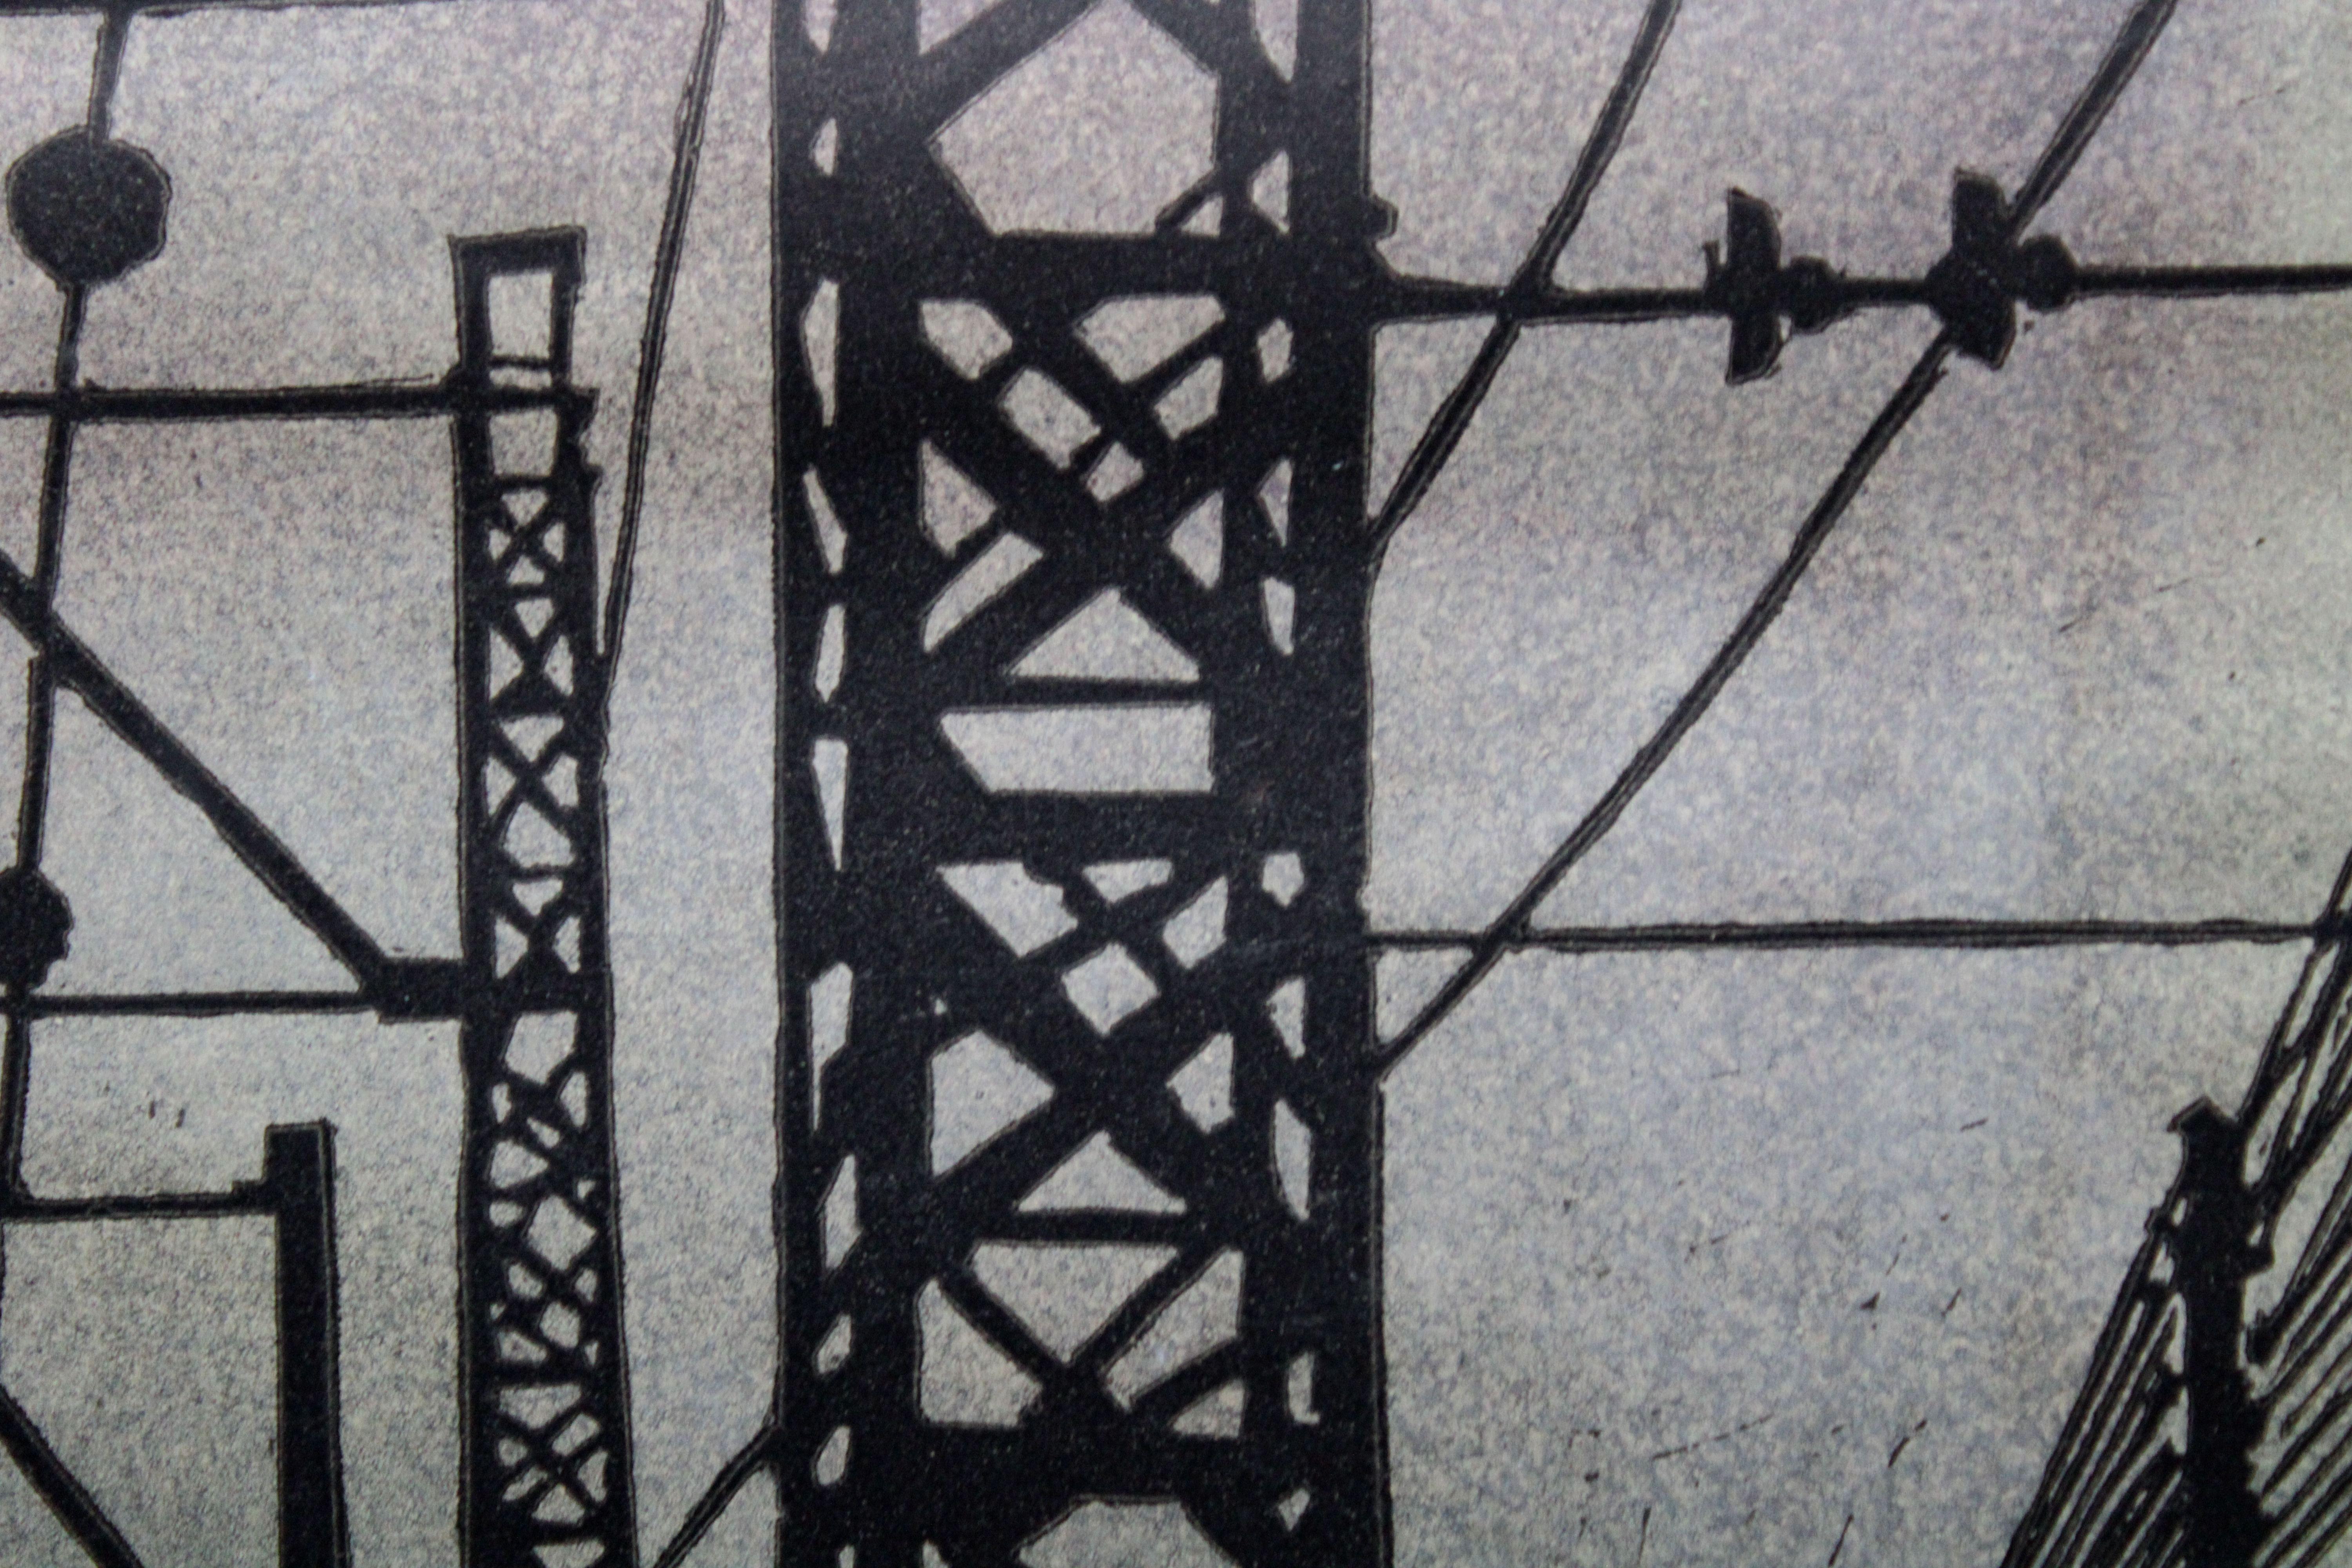 In Jurmala  1960, 1/10, Papier, Linolschnitt, 45x37 cm (Surrealismus), Print, von Albert Goltjakov 